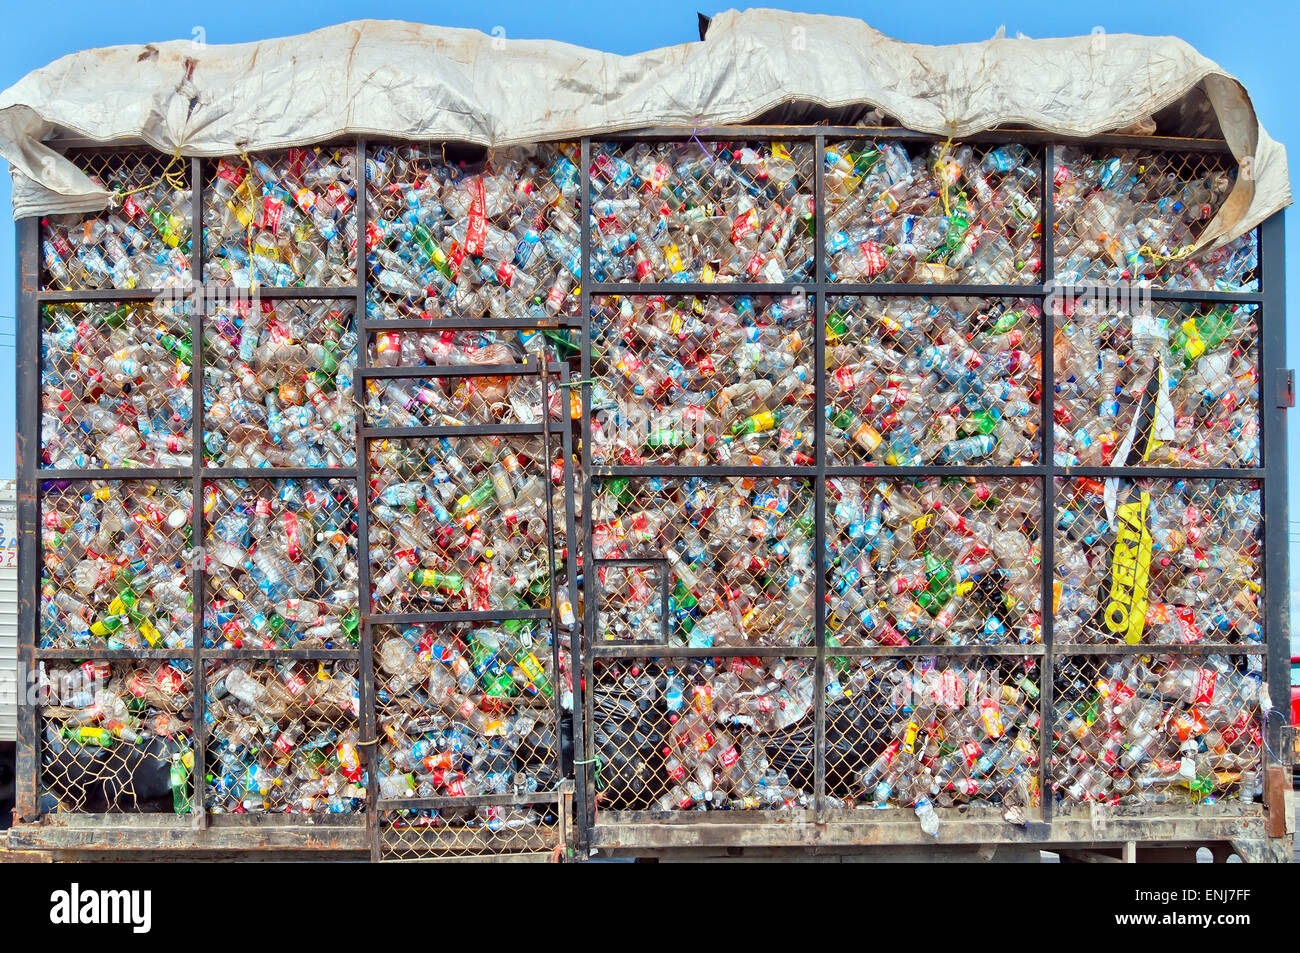 Isla Mujeres, México - Abril 24, 2014: las botellas de plástico se encuentran en un montón en una jaula de metal sobre un camión en Isla Mujeres, México. Foto de stock